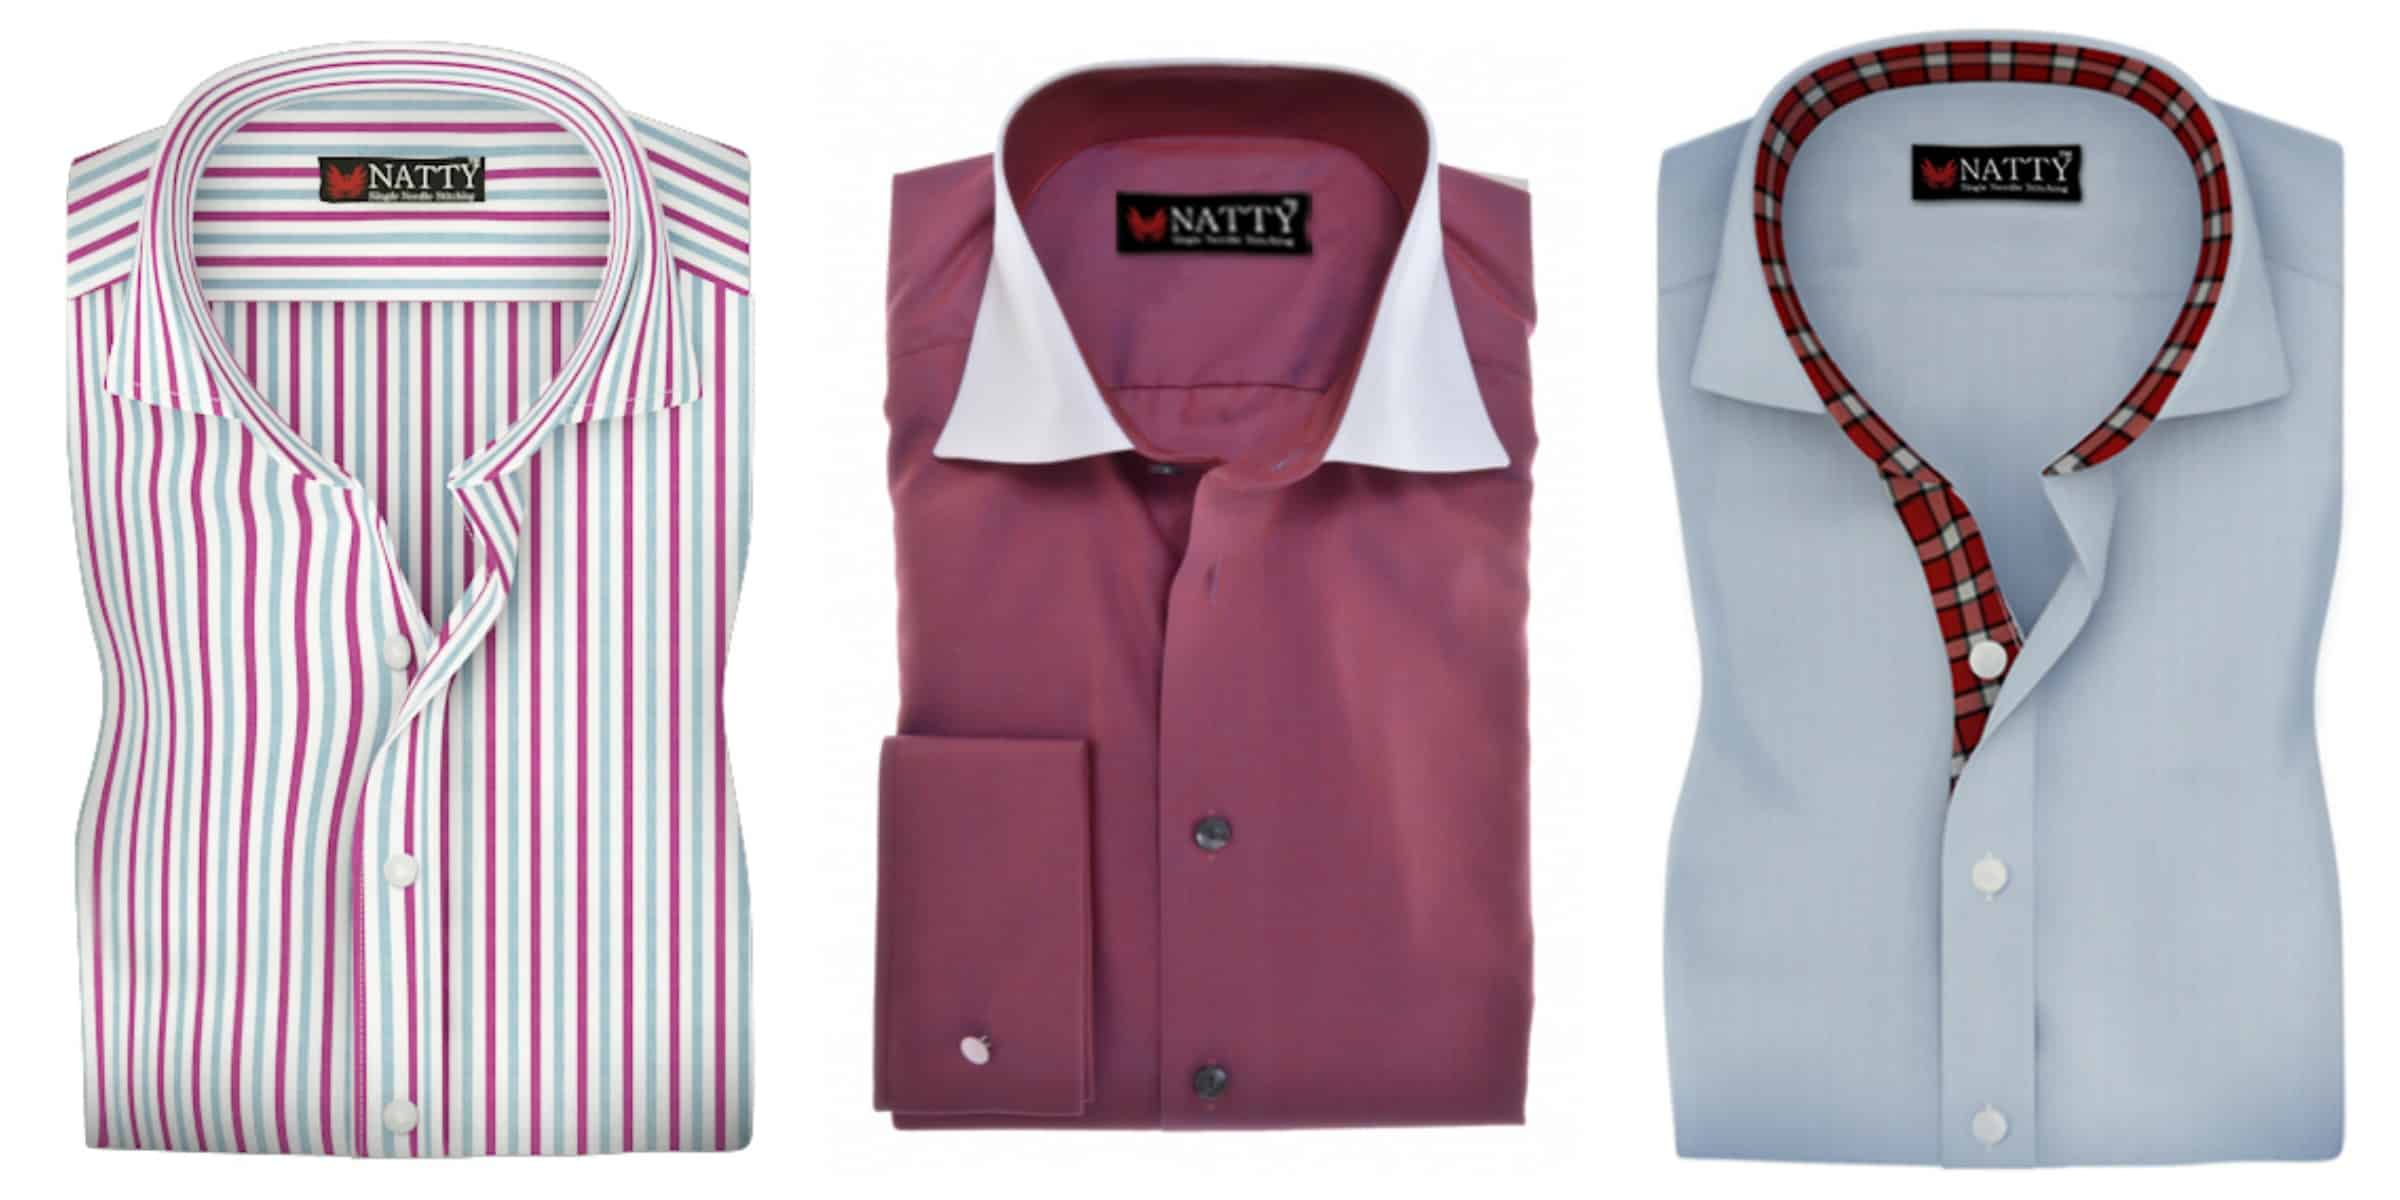 men button down shirts from NATTY SHIRTS SHOP 